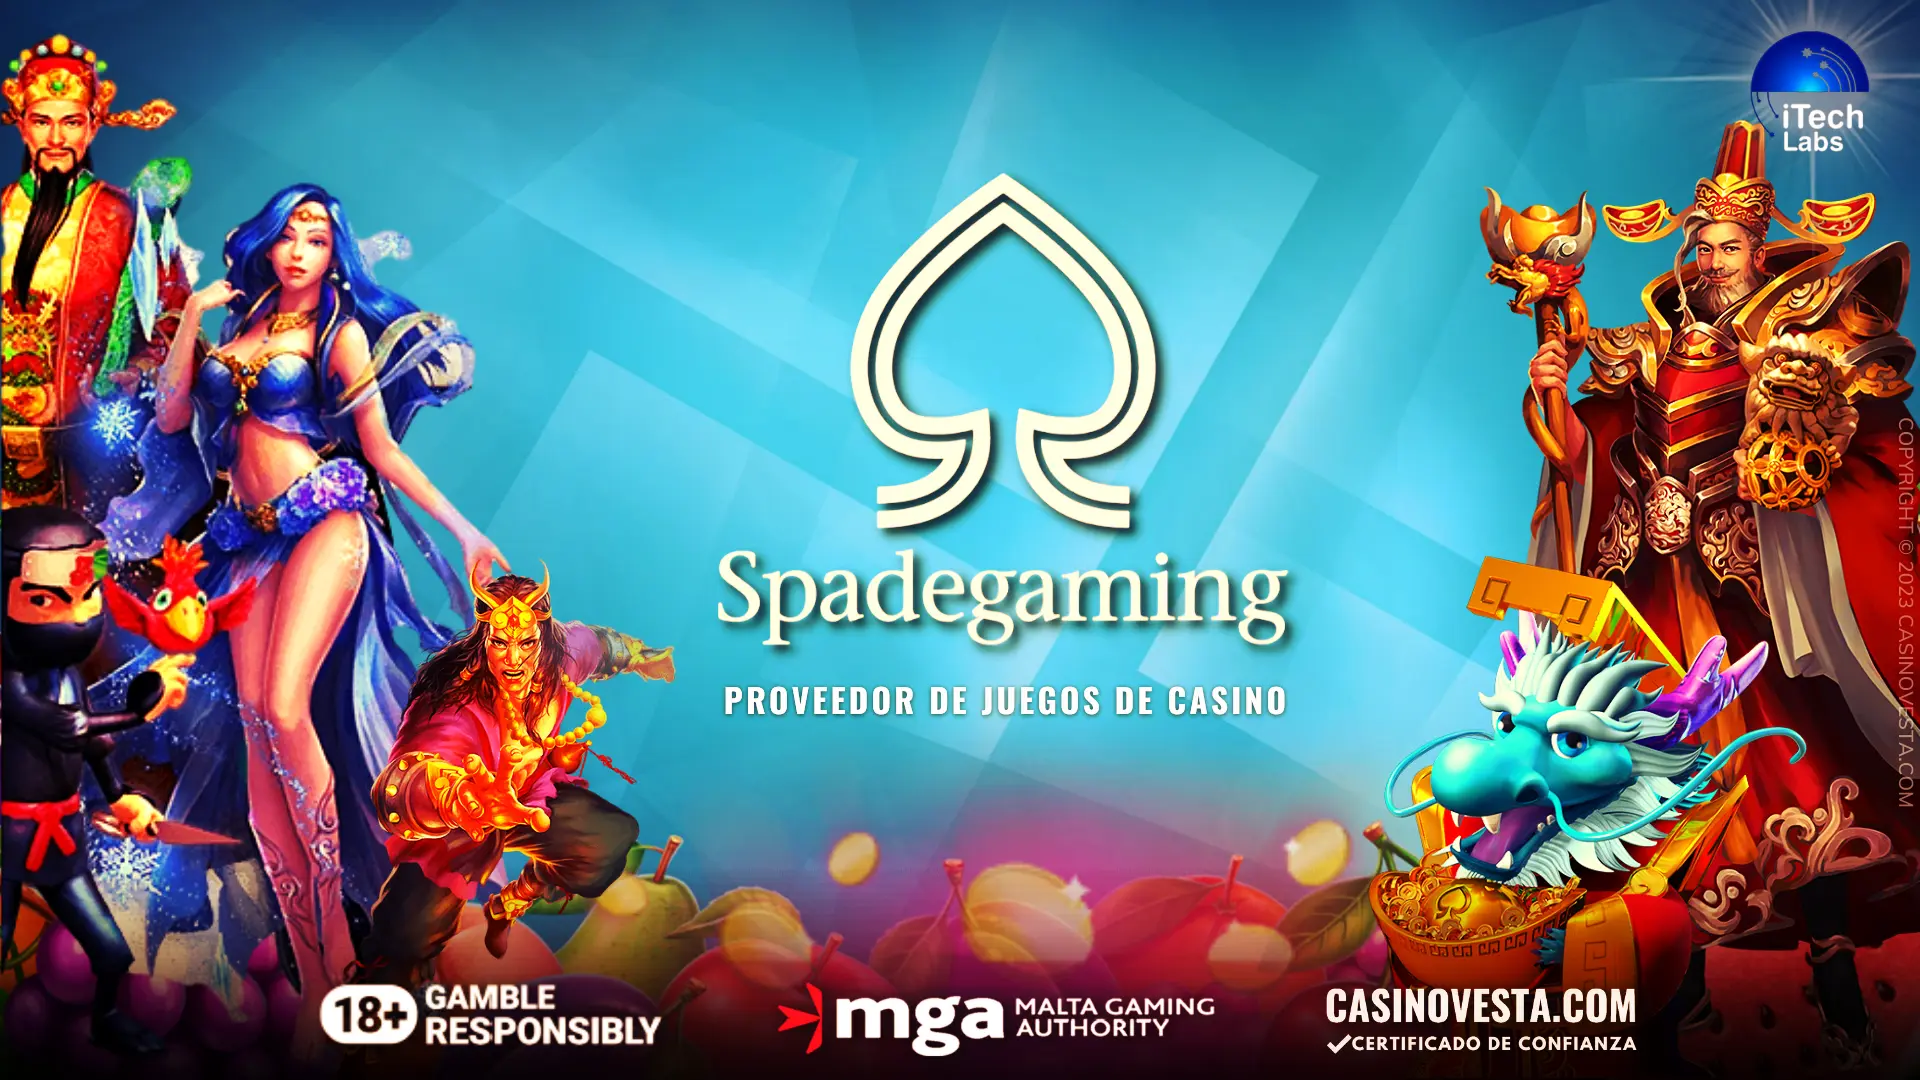 Revisión del proveedor de juegos de casino Spadegaming